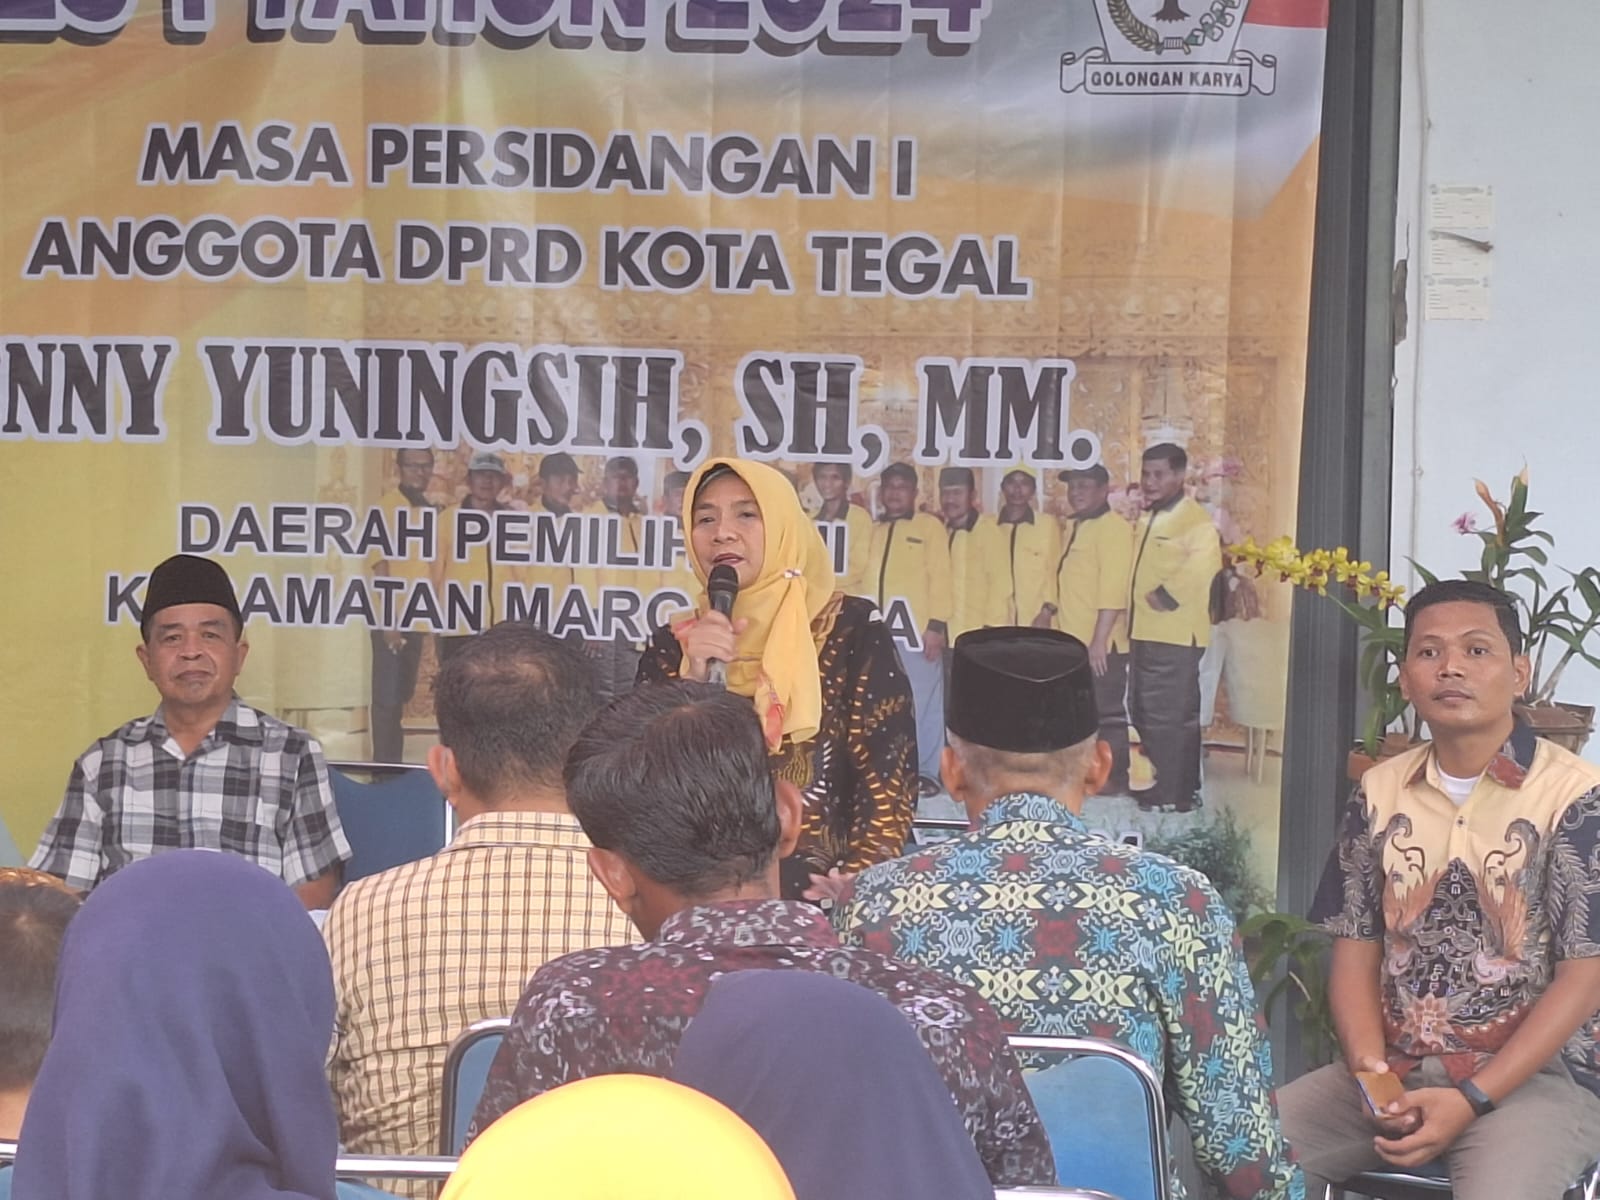 Anggota DPRD Kota Tegal Eny Yuningsih Terpilih Kembali, Pembangunan di Margadana akan Semakin Lancar 